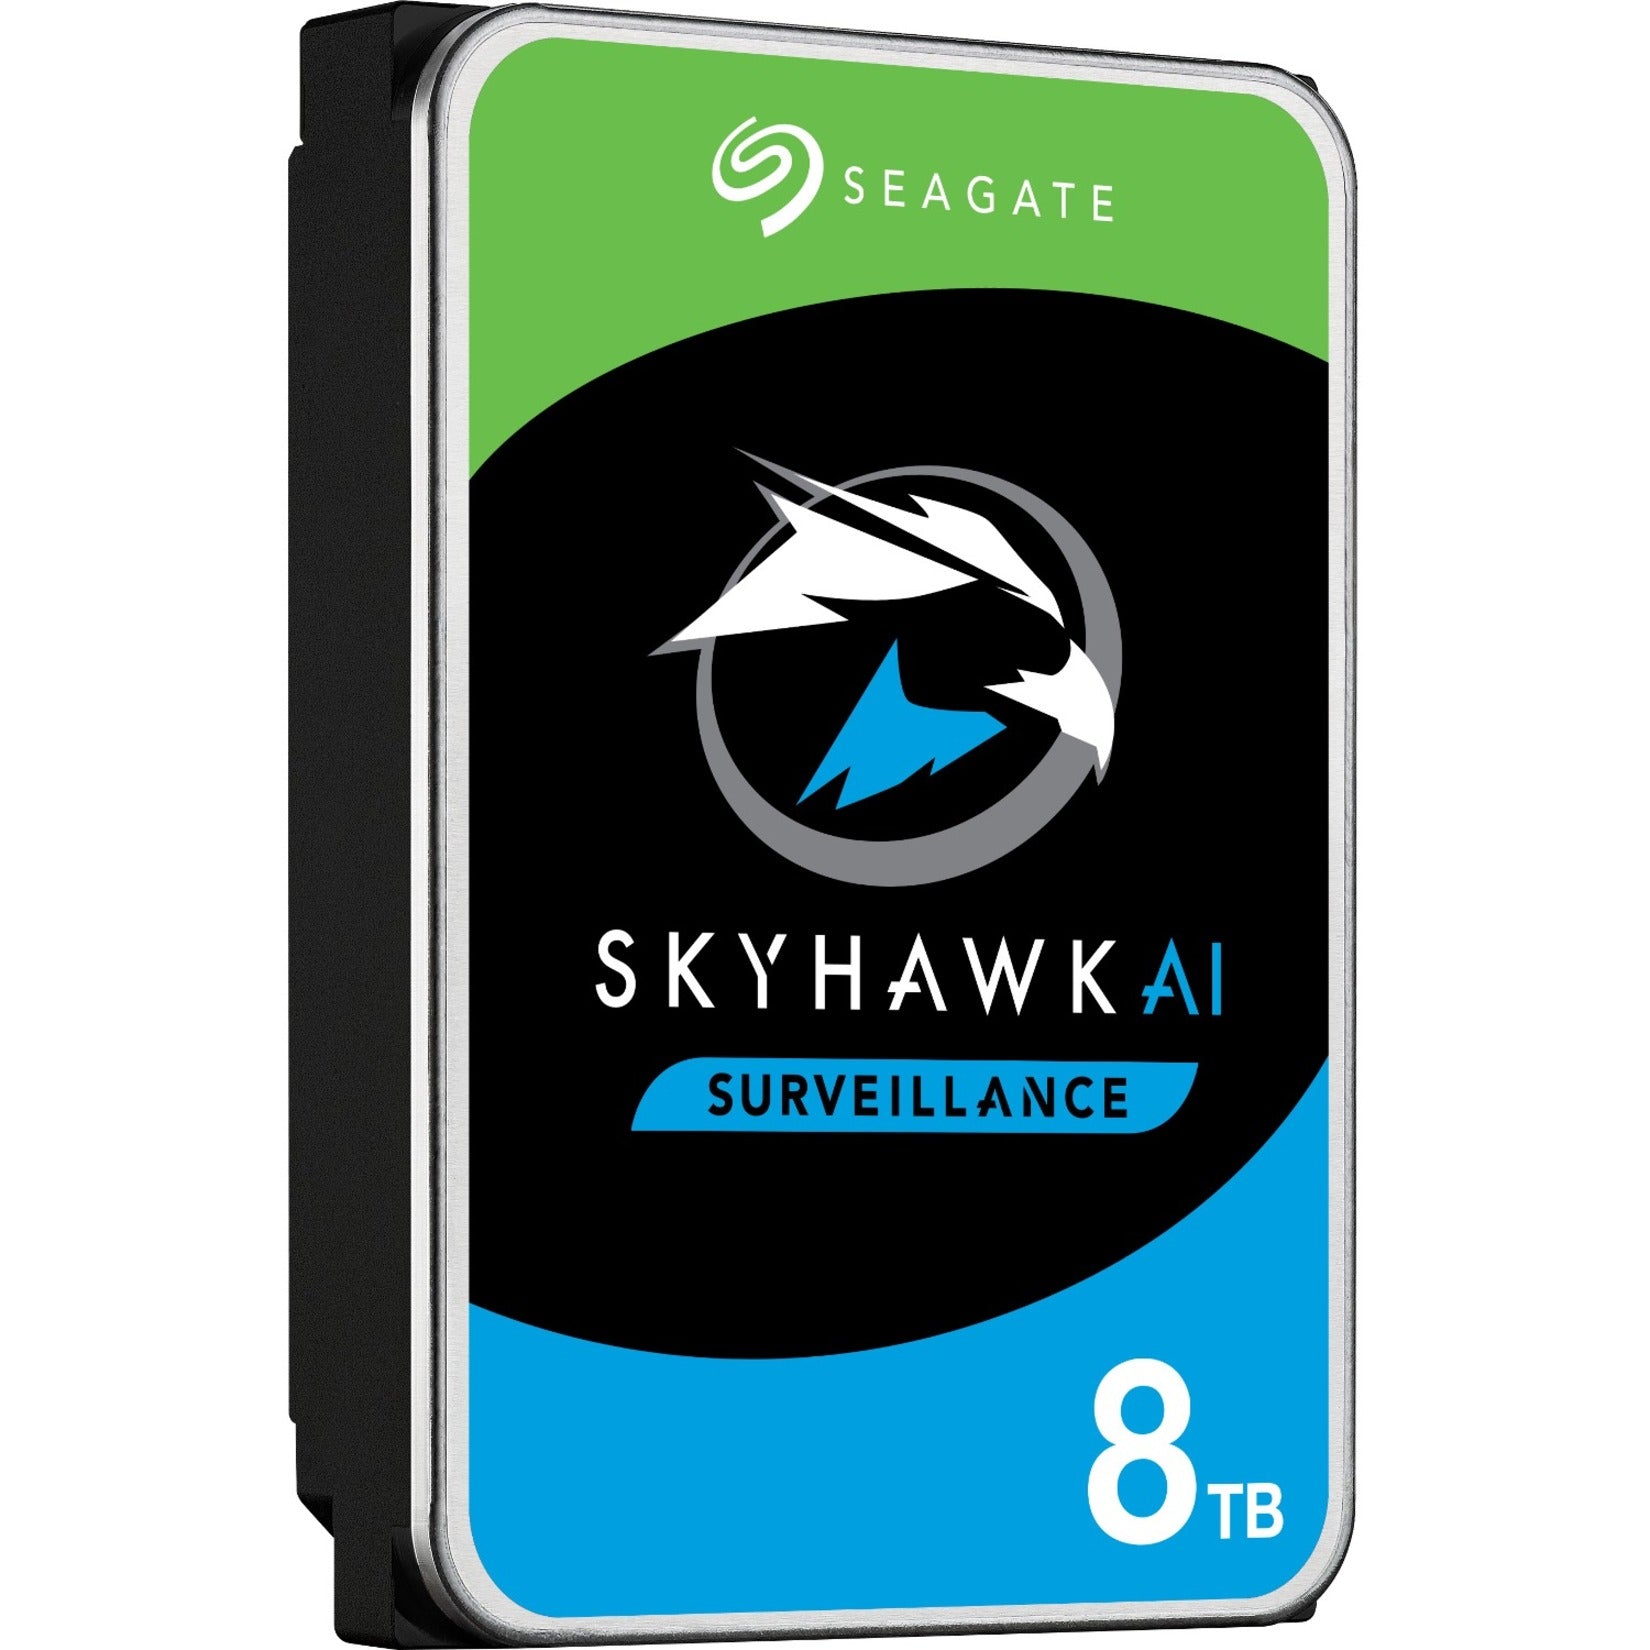 Seagate ST8000VE001 SkyHawk AI 8TB Unidad de Disco Duro Almacenamiento de Vigilancia 24x7. Marca: Seagate. Traducir marca: Seagate.